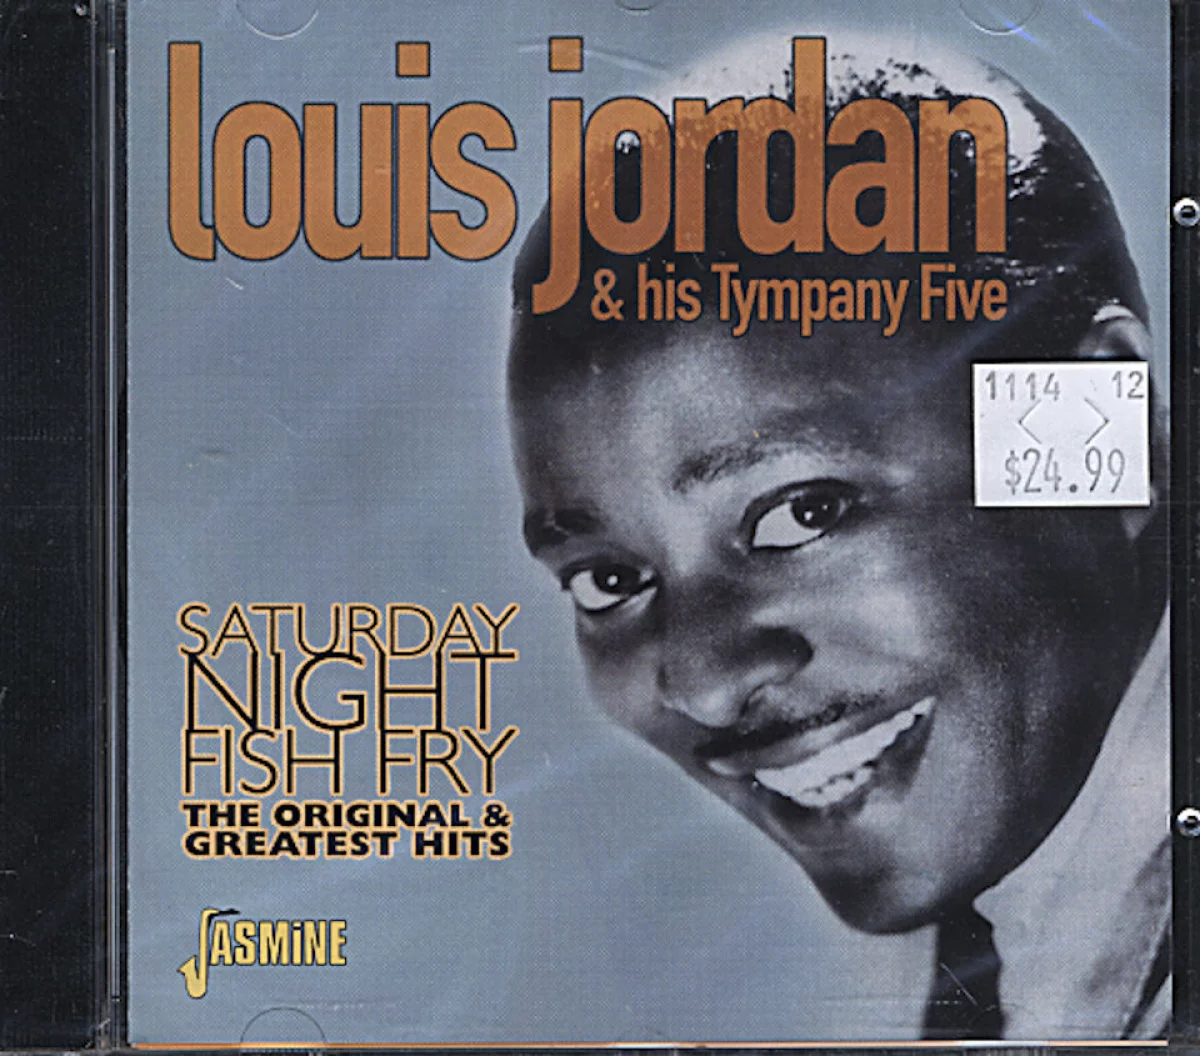 Louis Jordan & His Tympany Five CD, 2000 at Wolfgang's